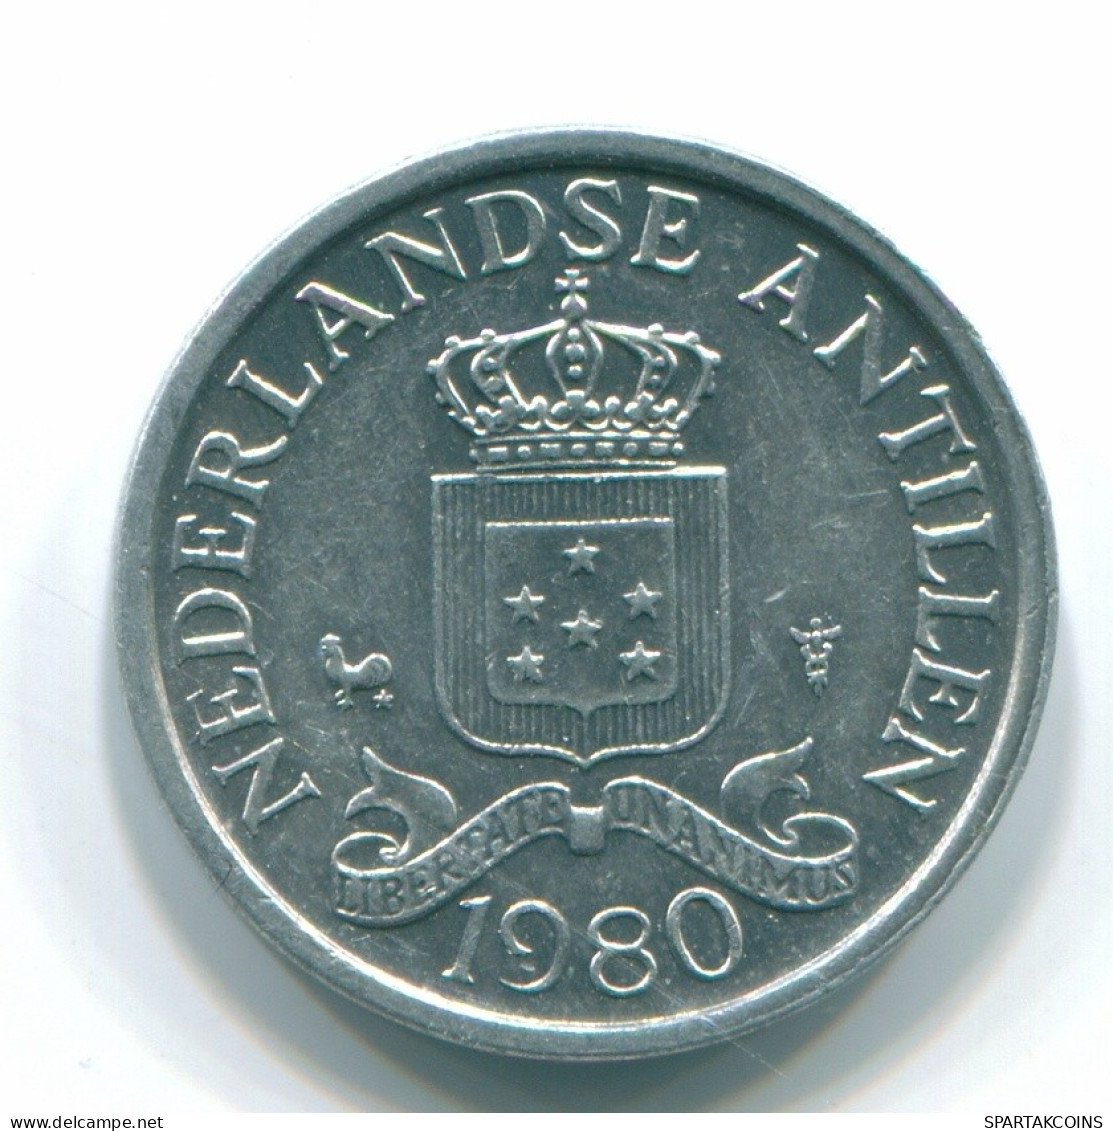 1 CENT 1980 NIEDERLÄNDISCHE ANTILLEN Aluminium Koloniale Münze #S11193.D.A - Netherlands Antilles